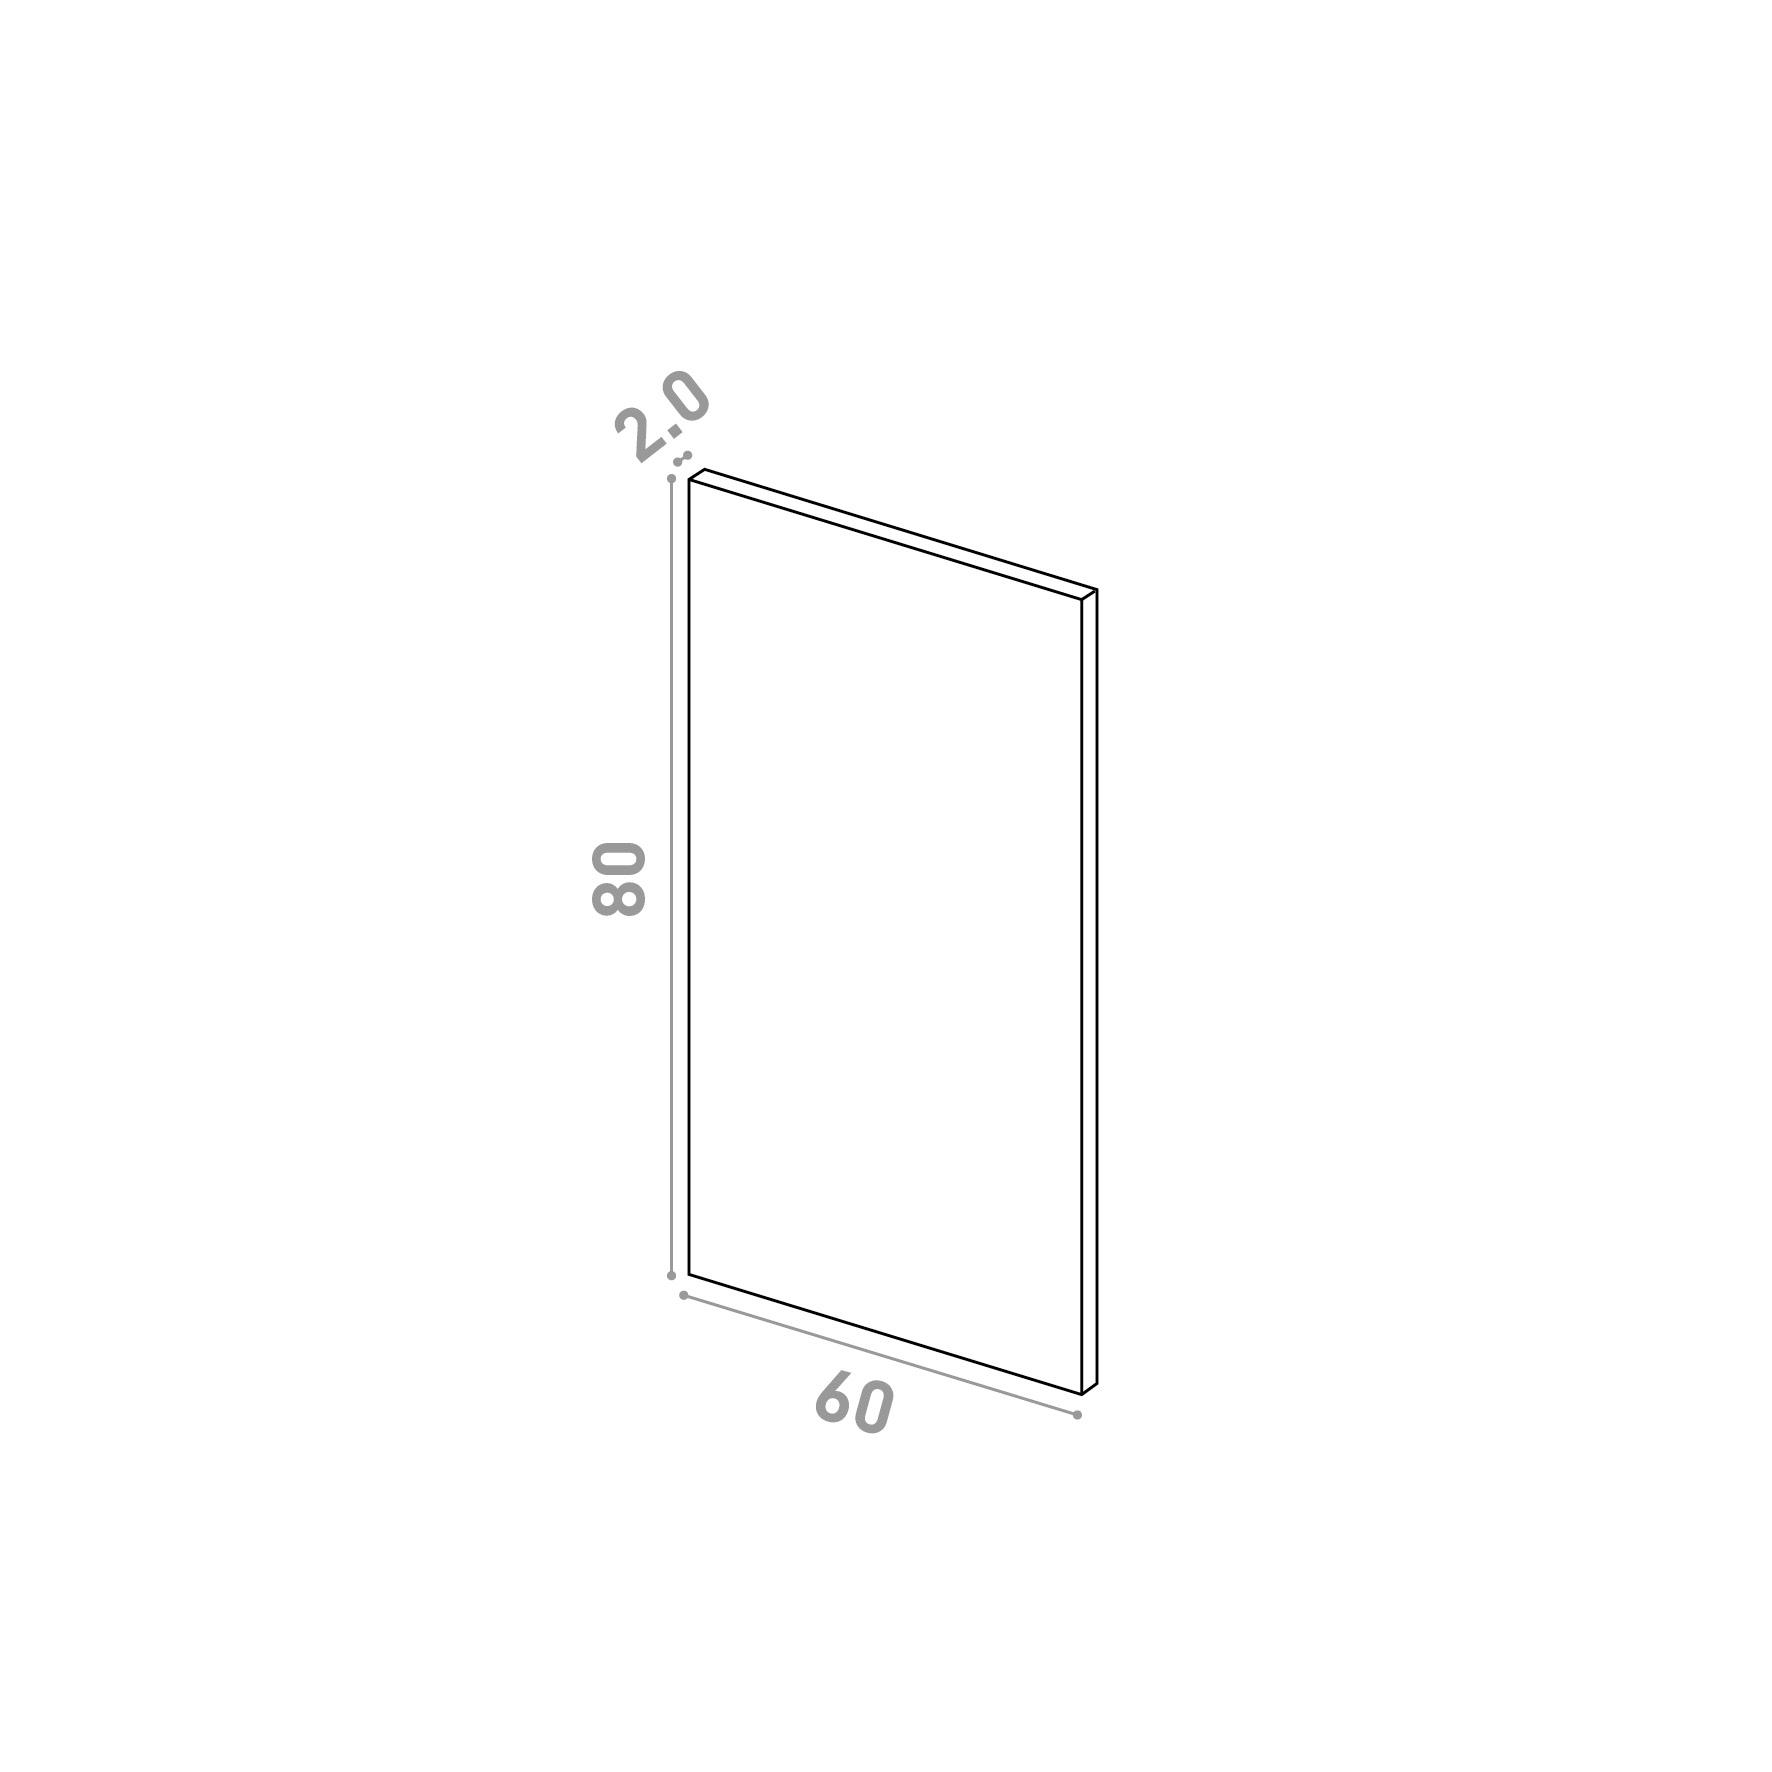 Door 60x80cm | Straight design | Matte lacquered